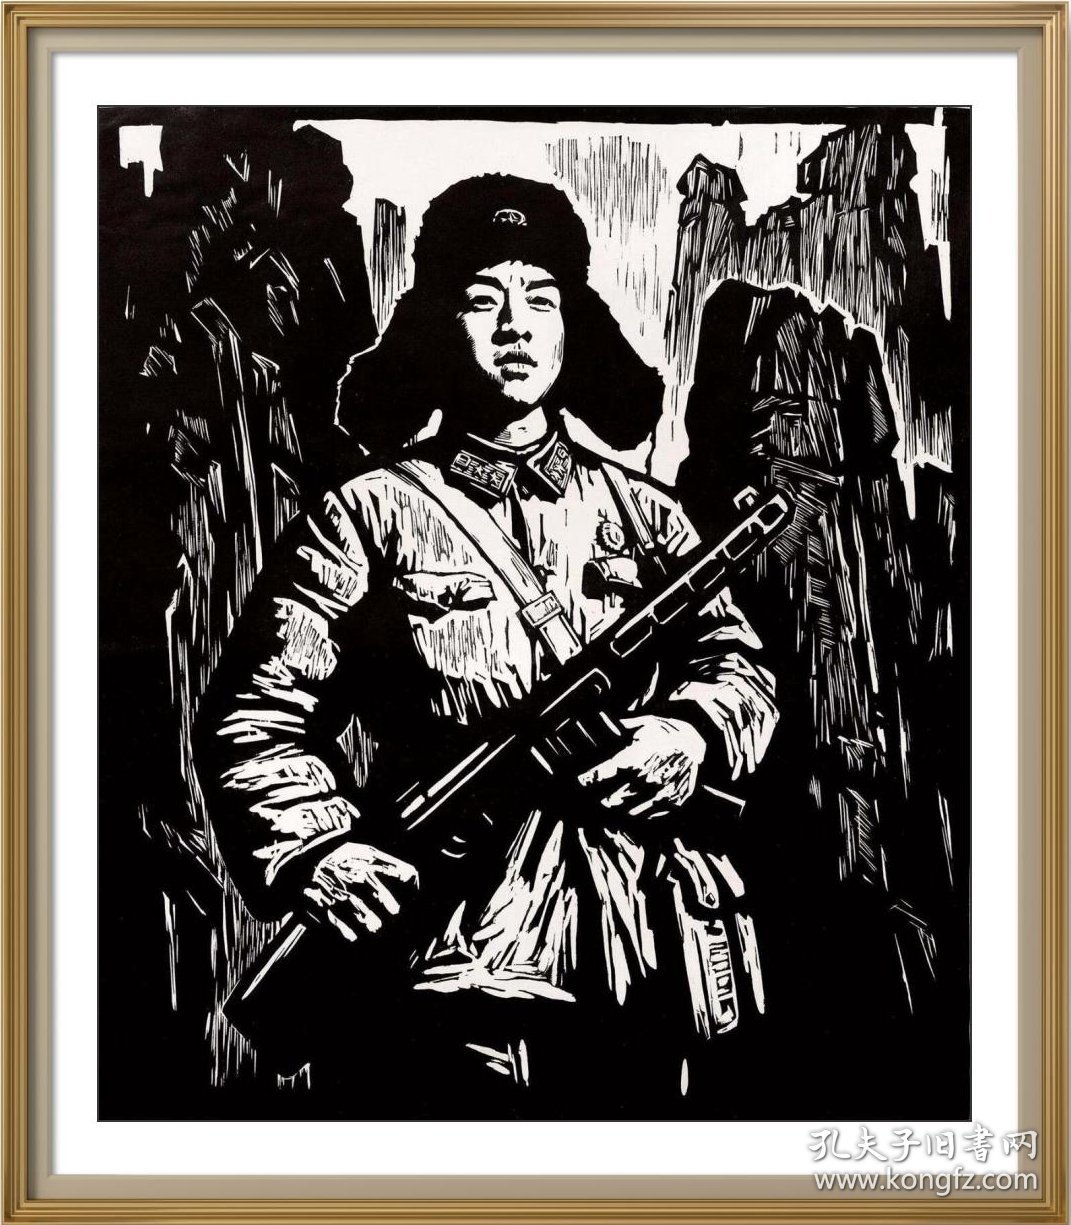 吴强年 1963年木刻 版画《雷锋》
【中国美术馆收藏】